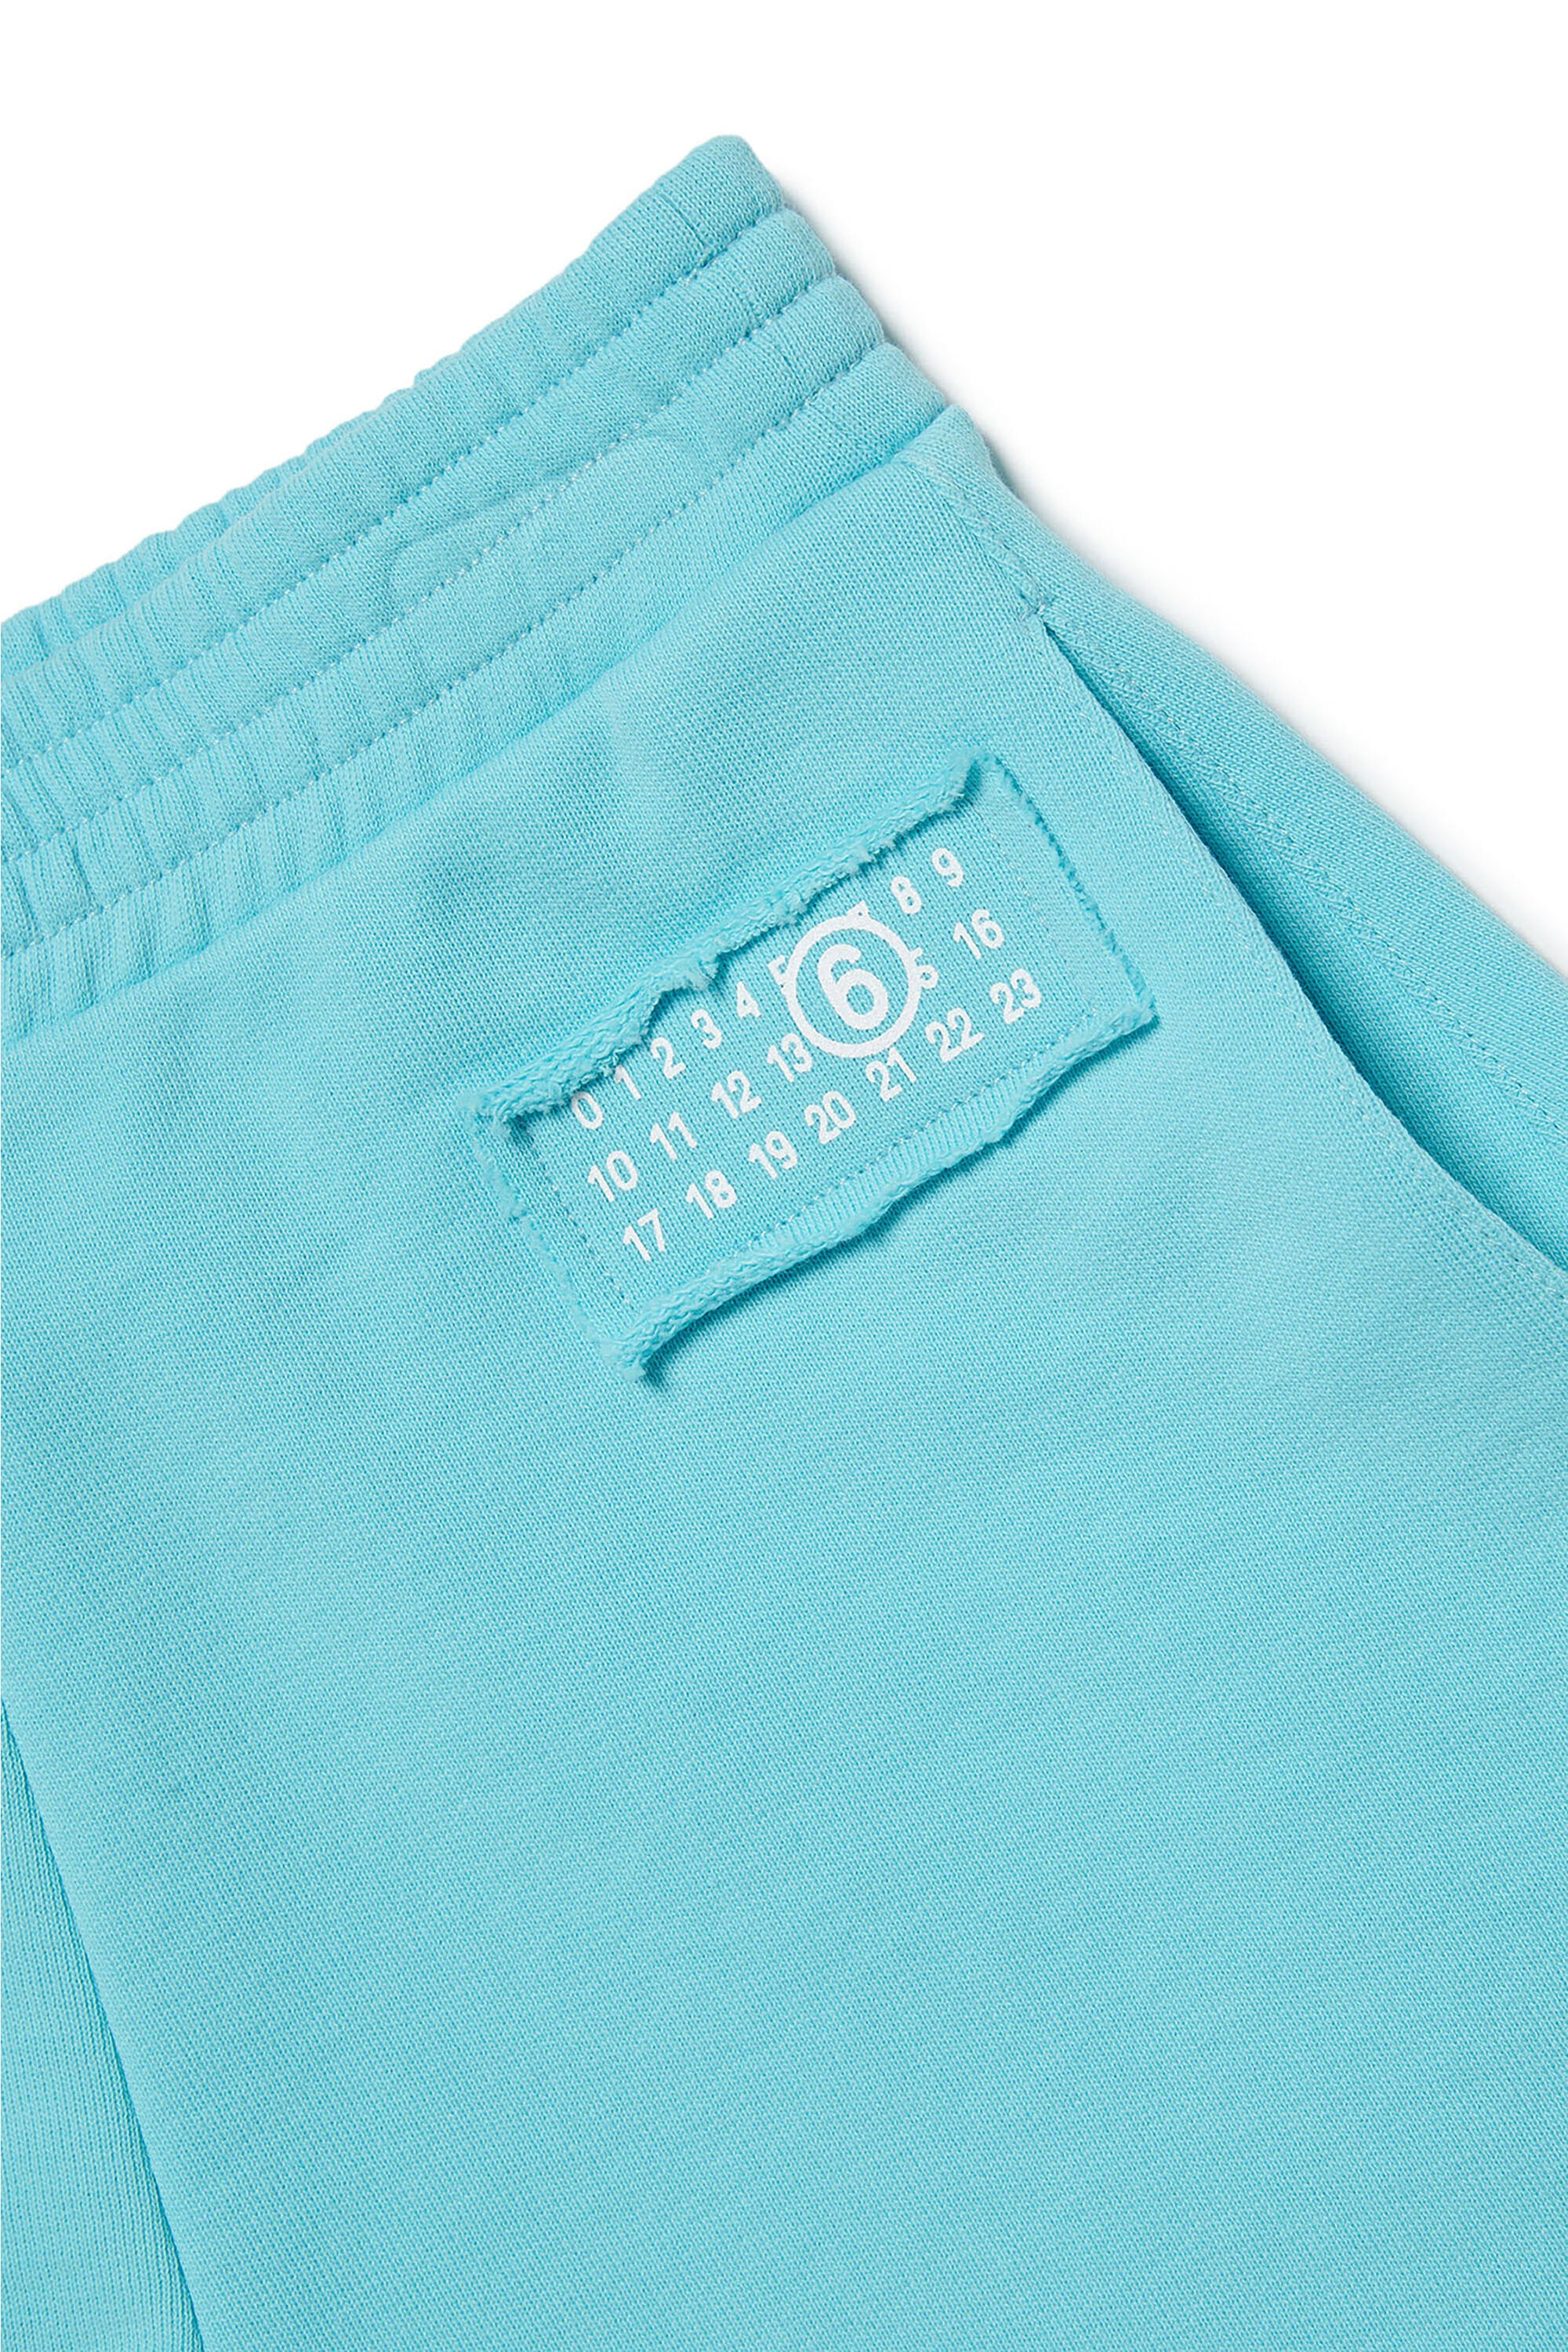 Pantalones cortos en chándal con numeric logo